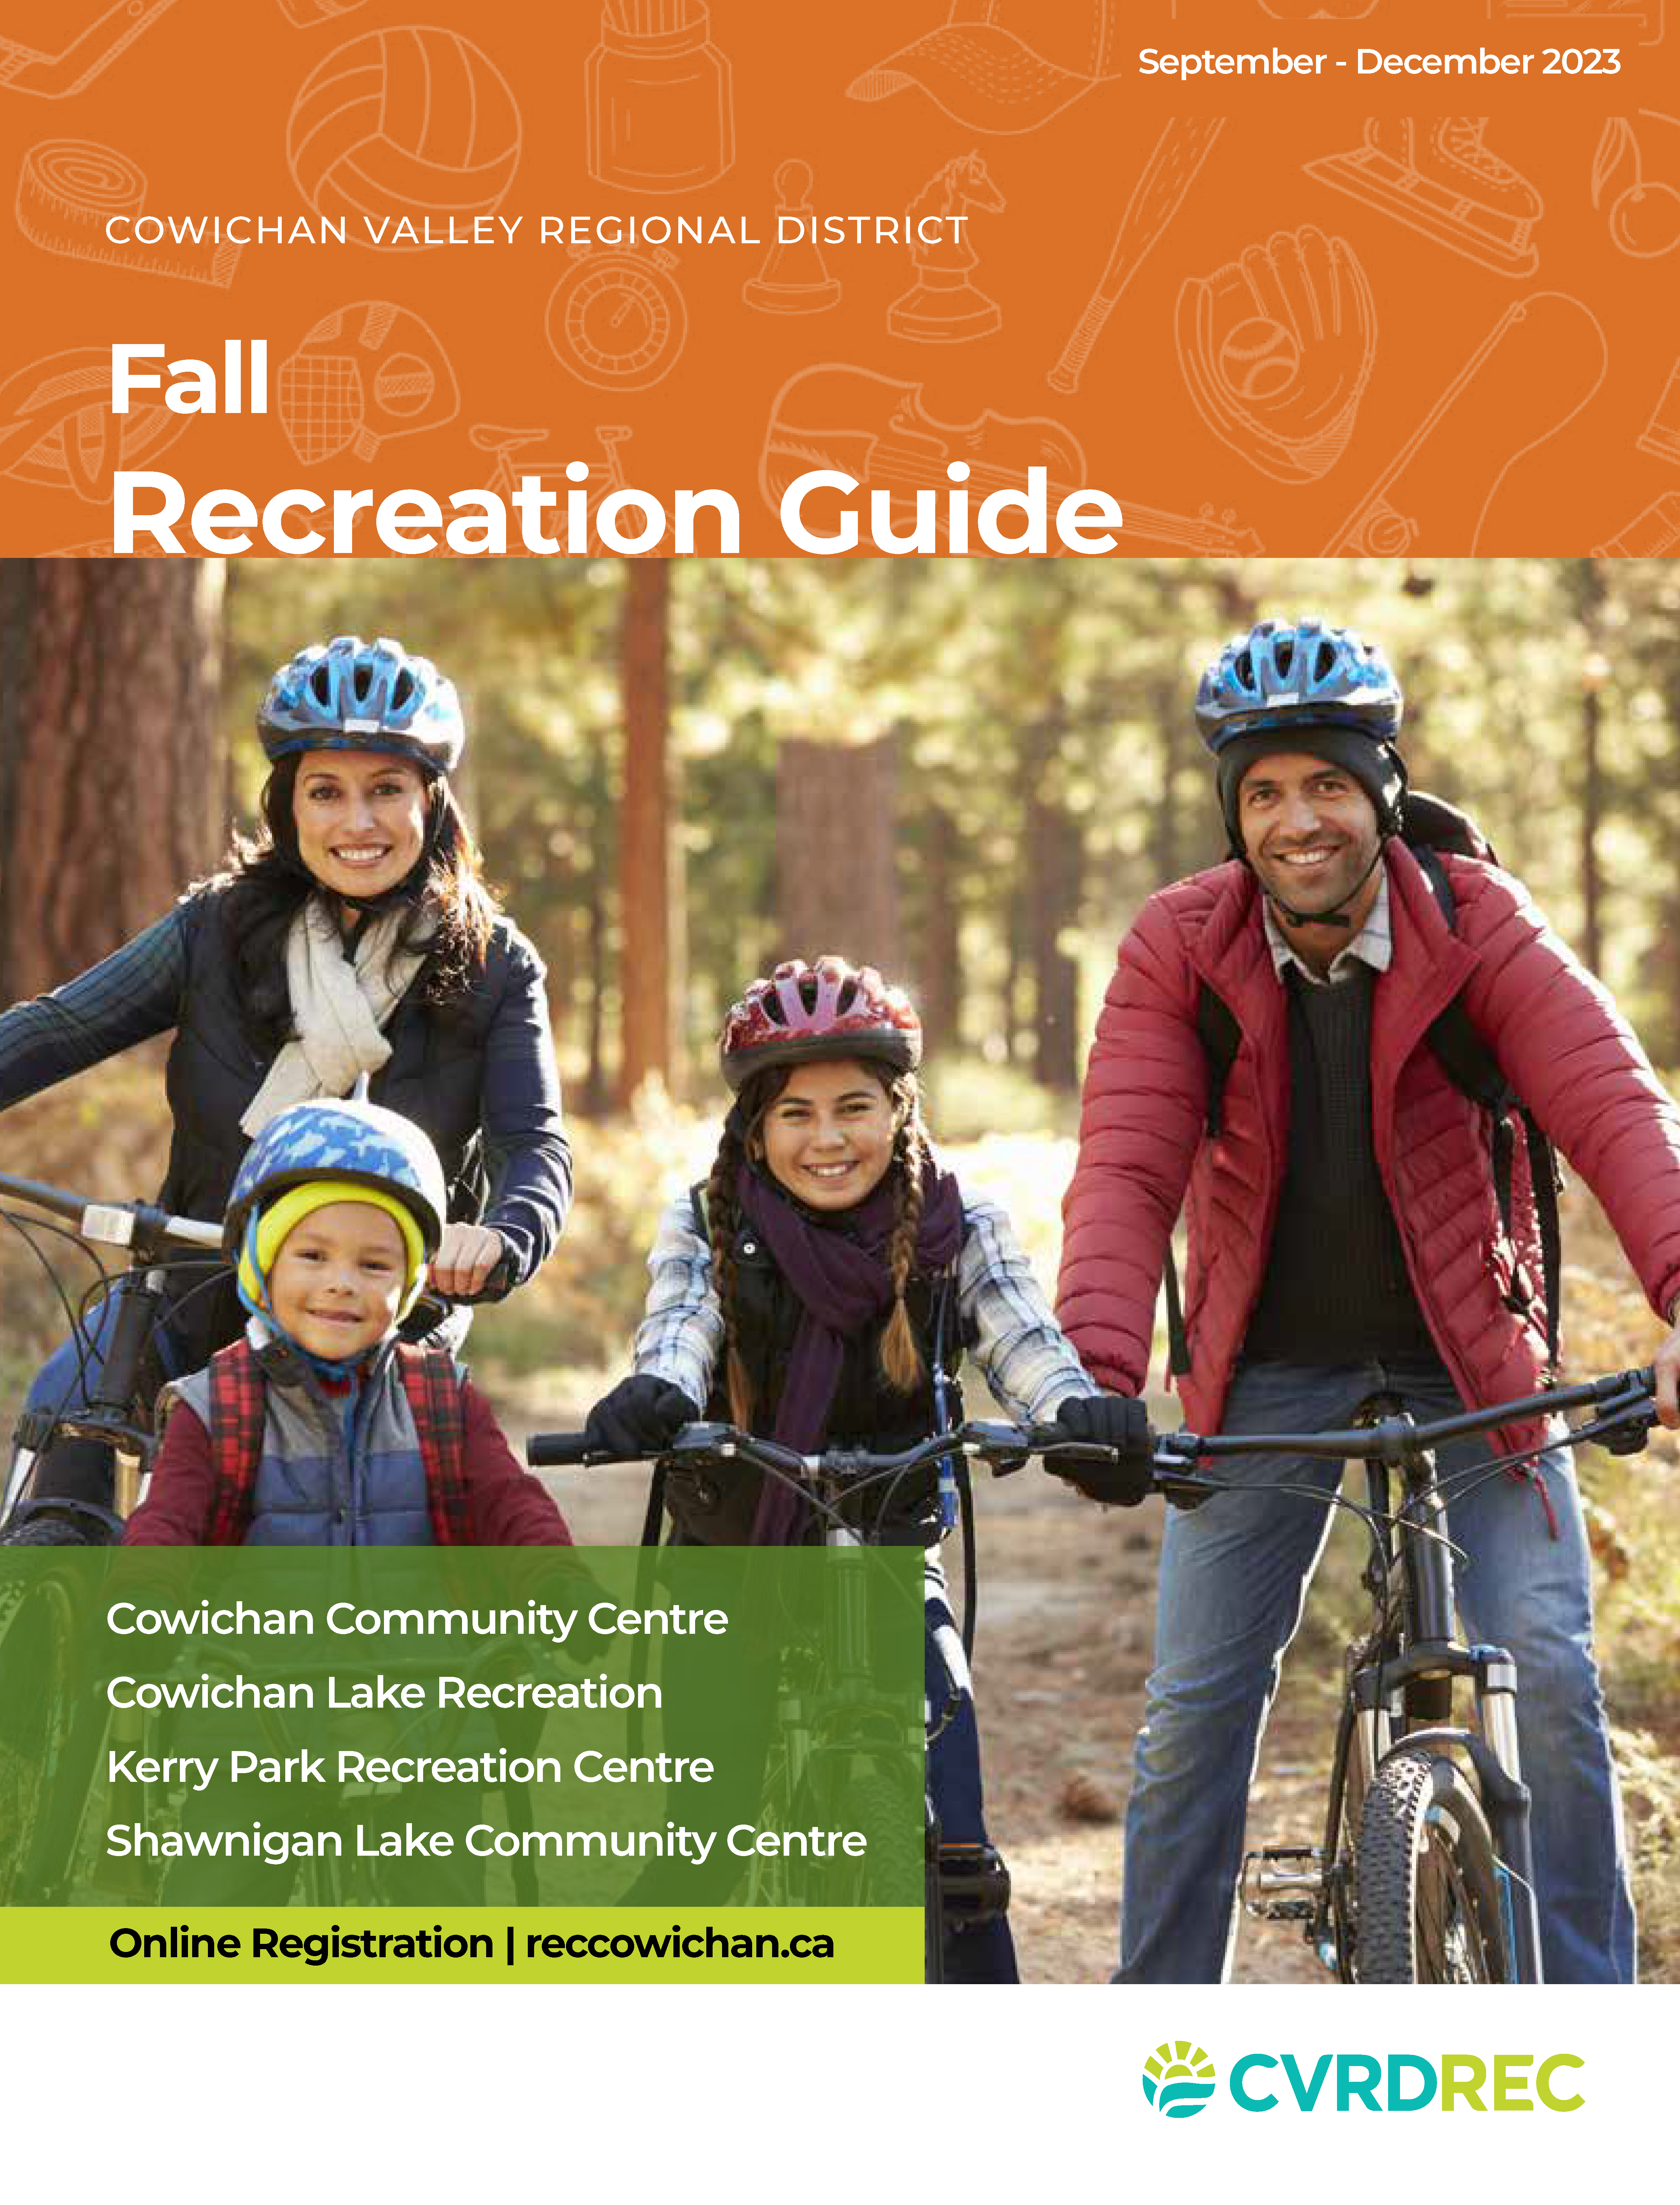 CVRD Recreation Guide Fall 2023